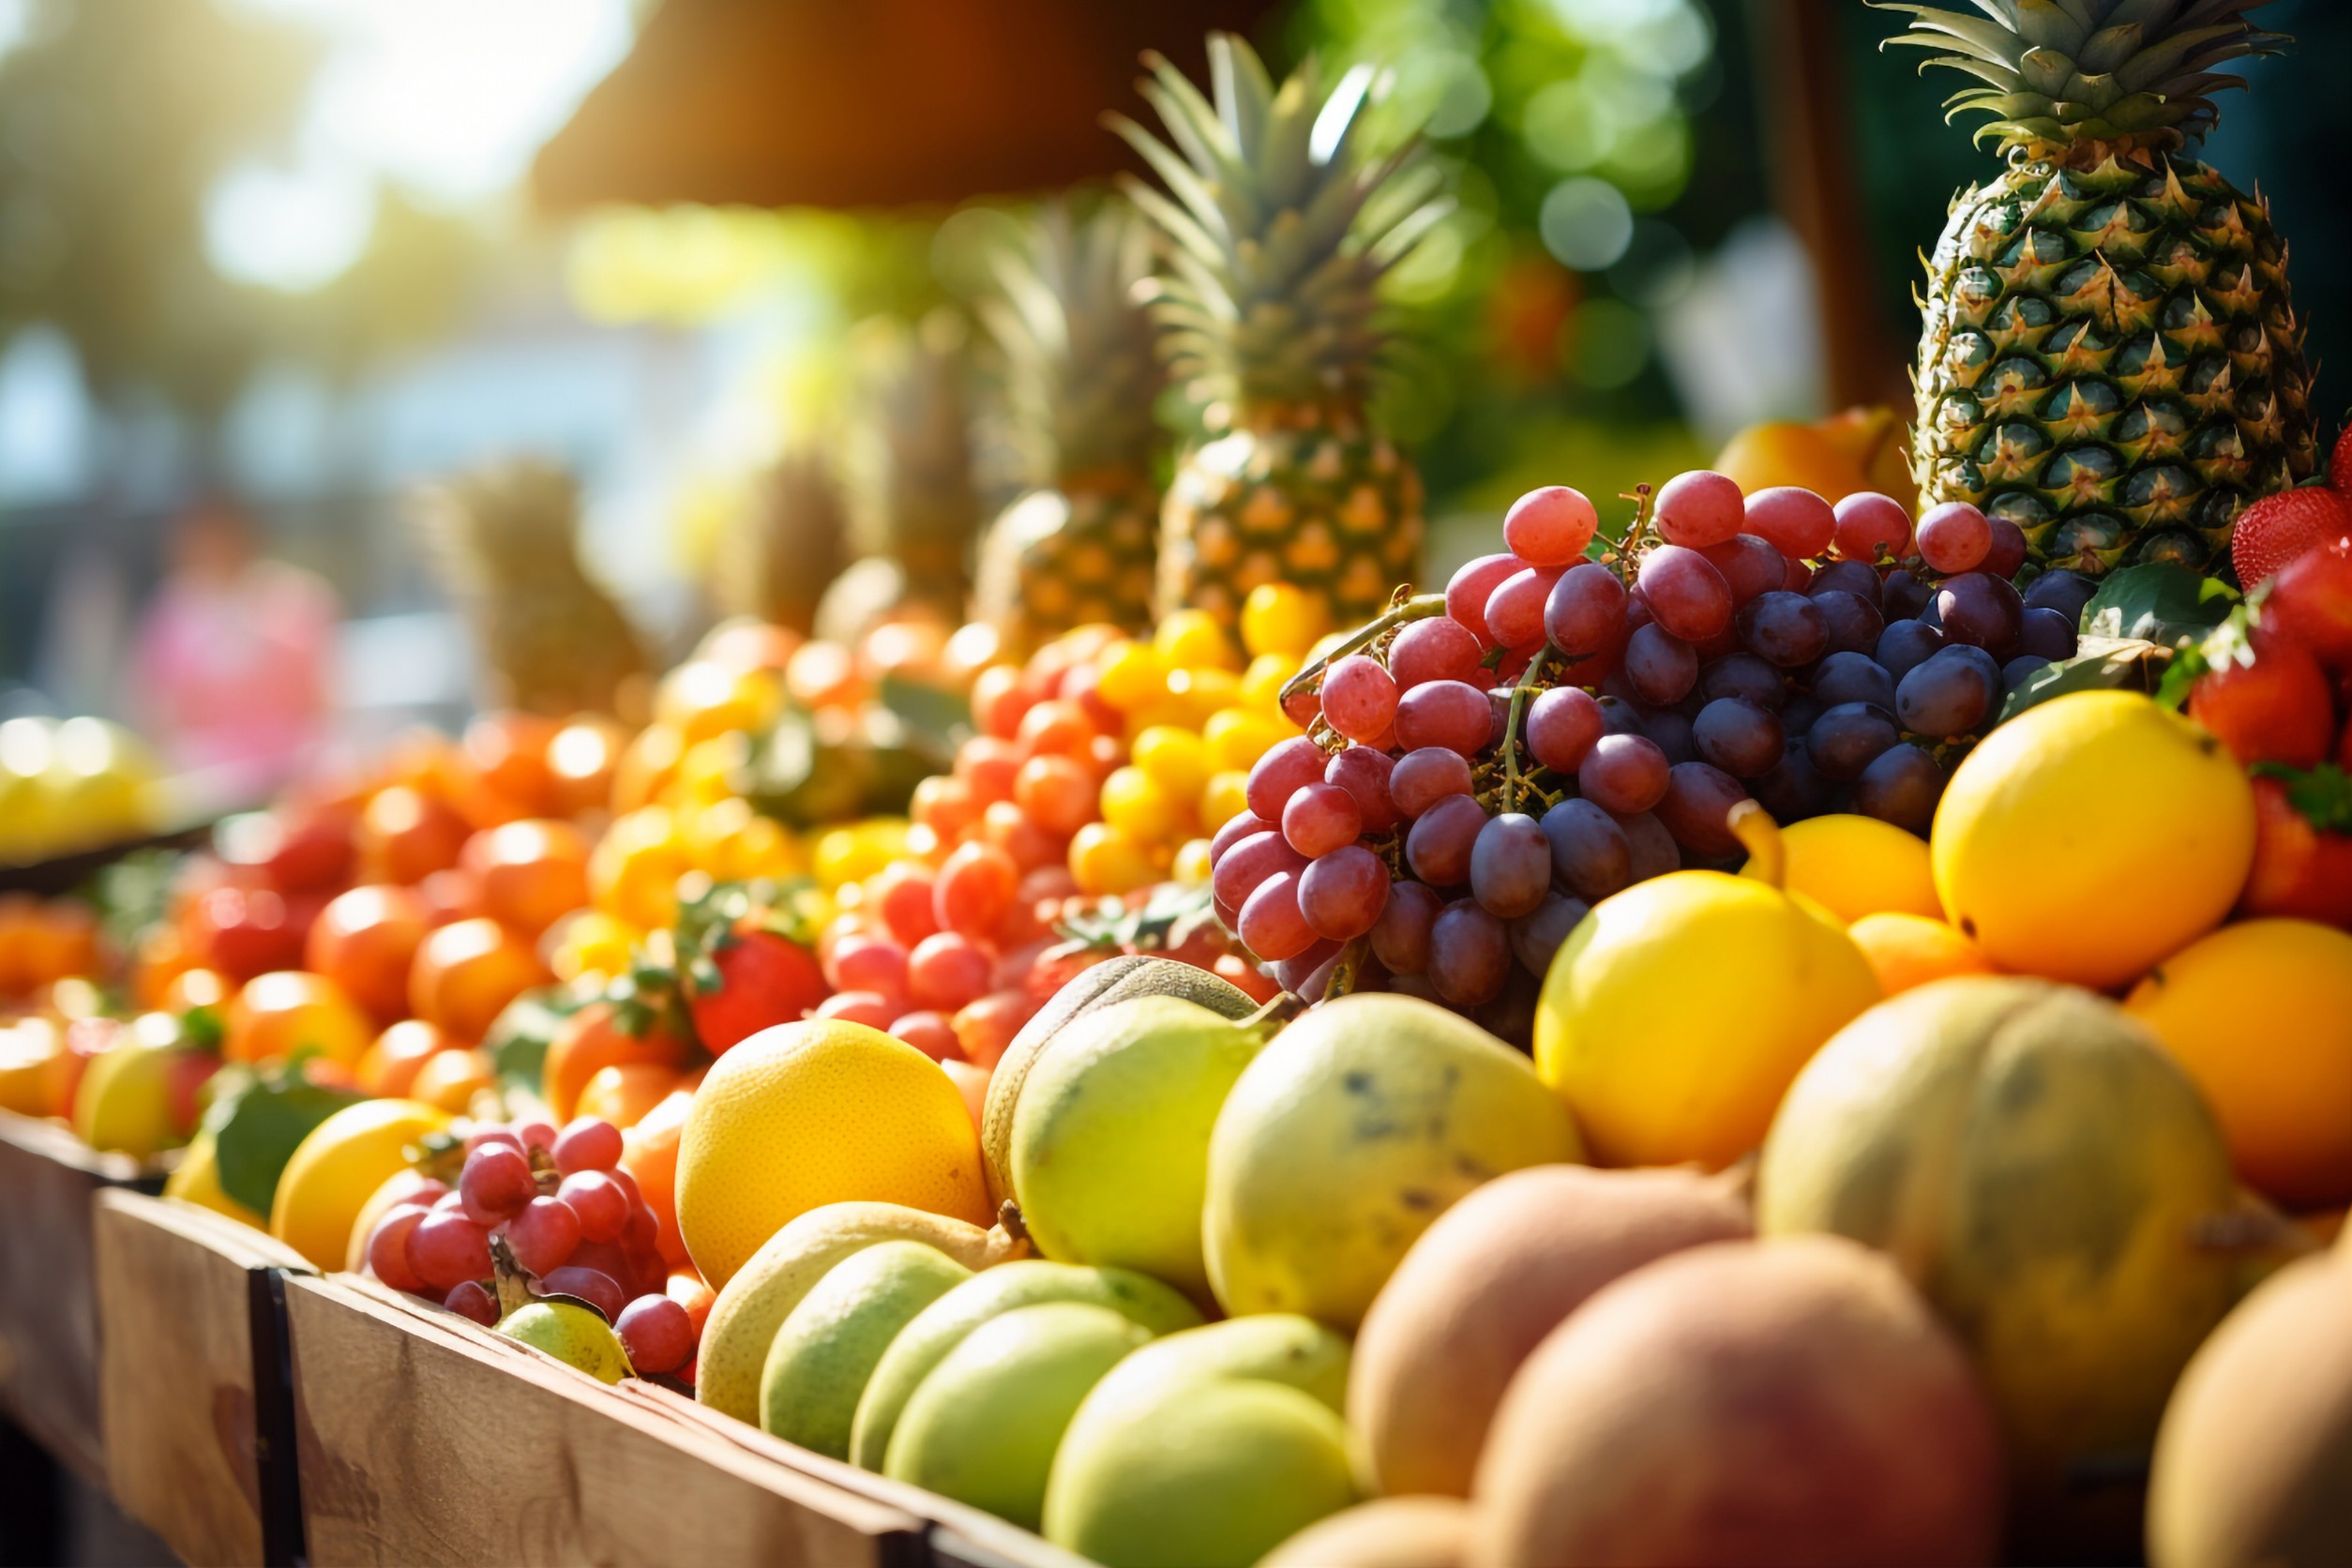 Stragan wypełniony świeżymi, dojrzałymi owocami letnimi. /Źródło: 123rf.com